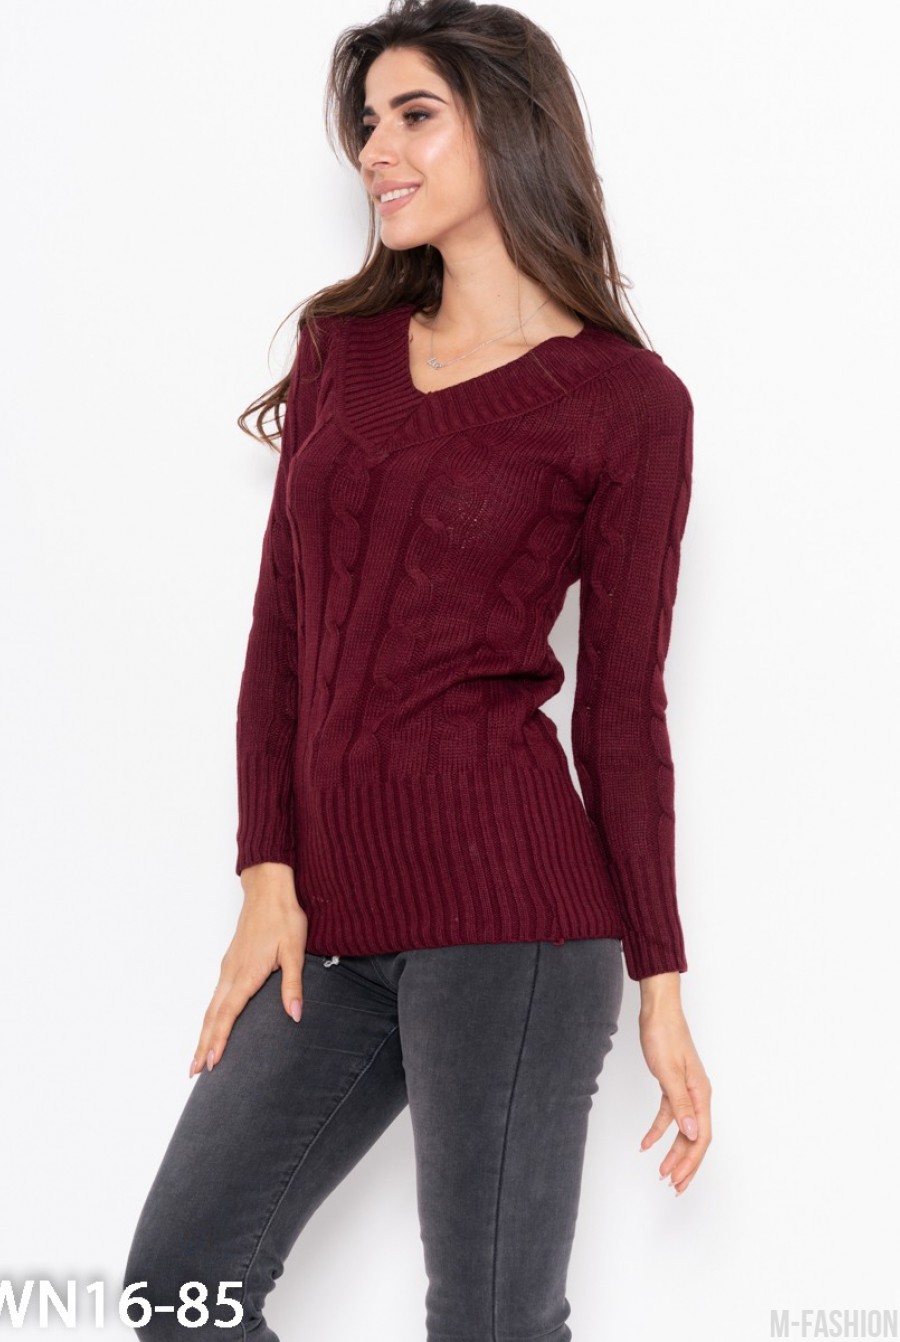 Бордовый тонкий свитер ажурной вязки- Фото 3